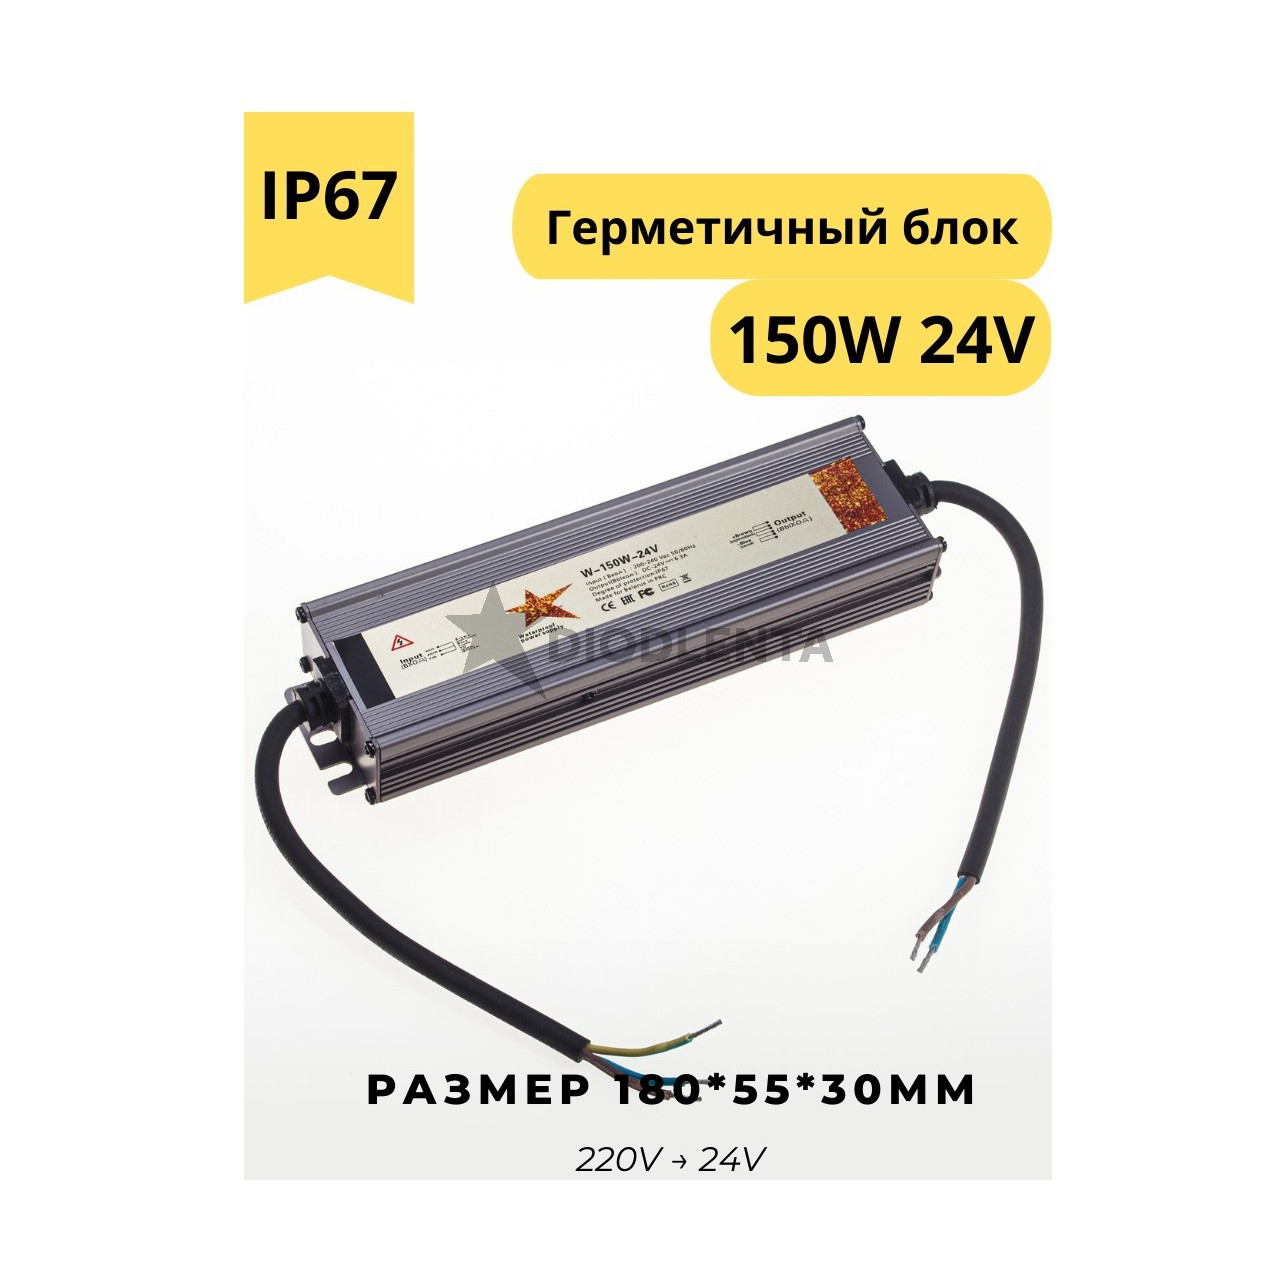 Герметичный блок питания W-150w-24v IP67 для светодиодных лент